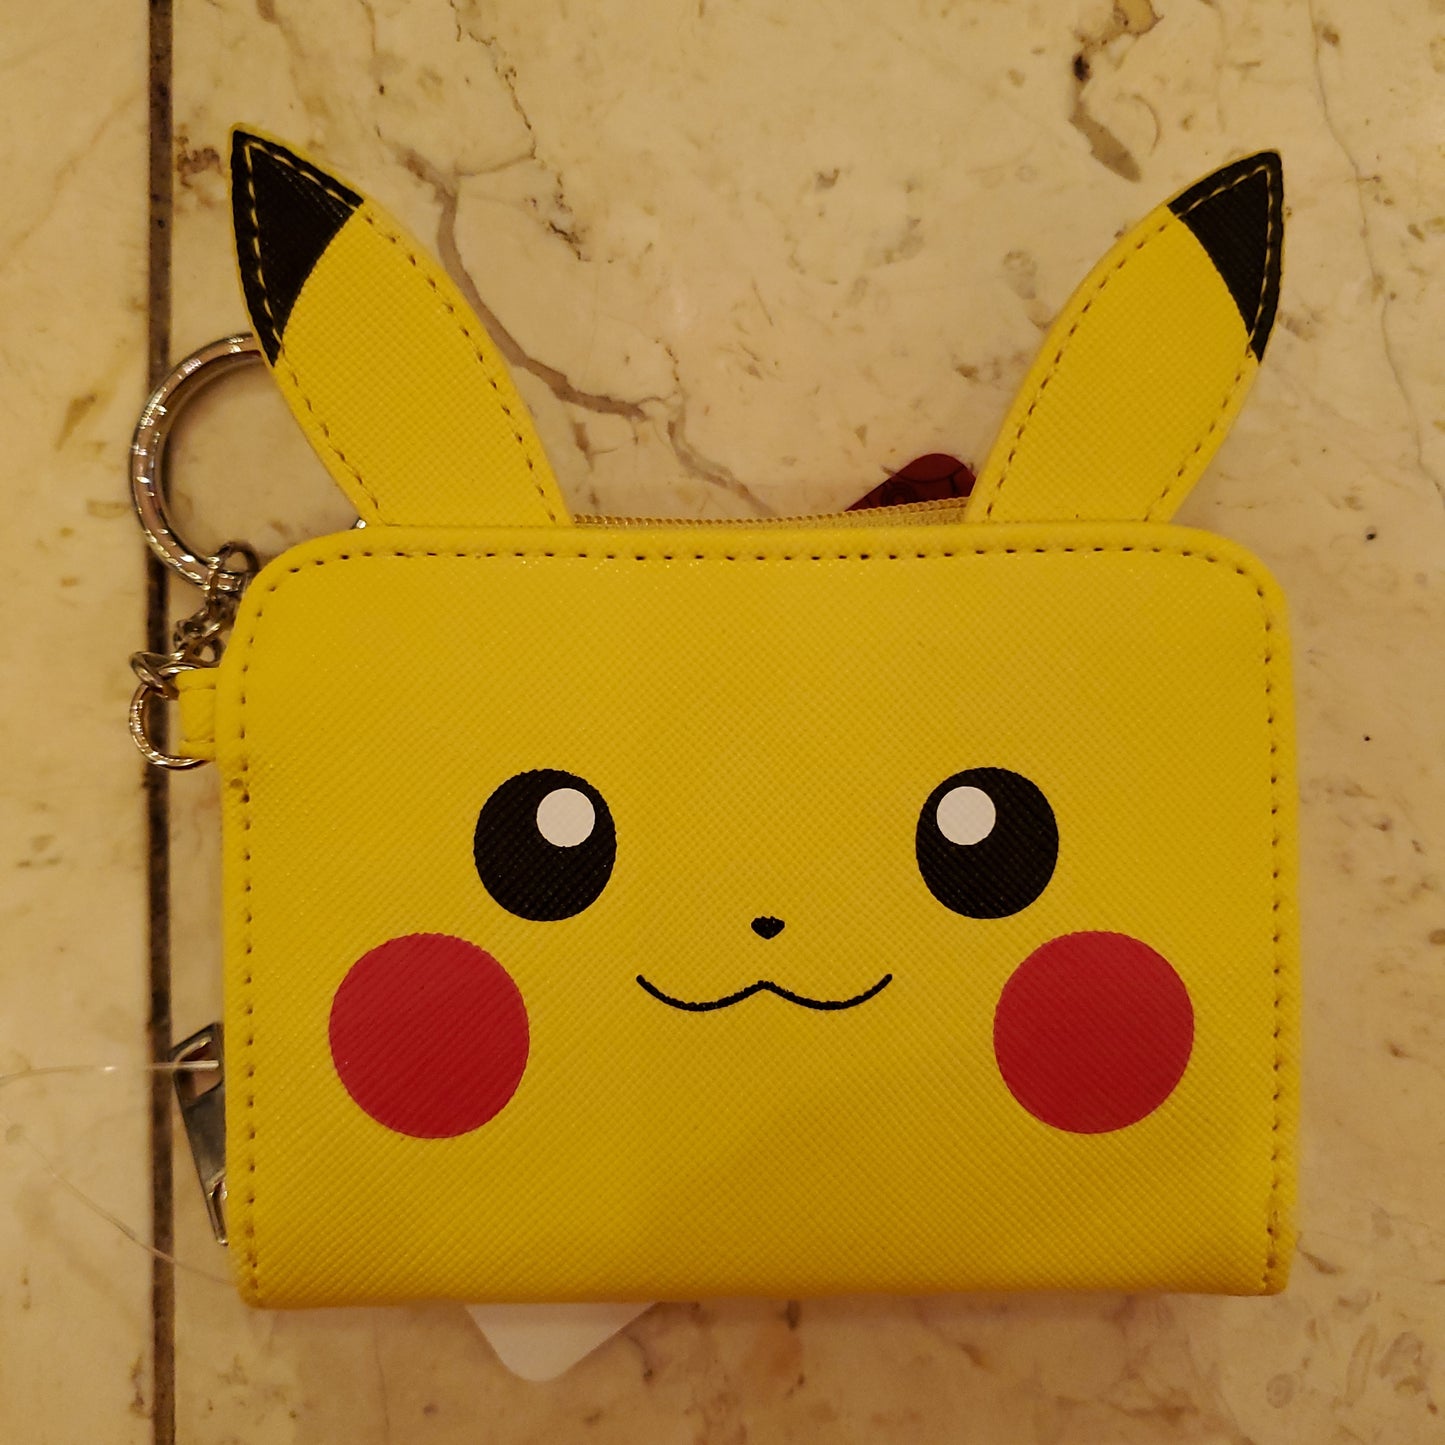 Pokémon - Pikachu Mini Zip Around Wallet by Bioworld